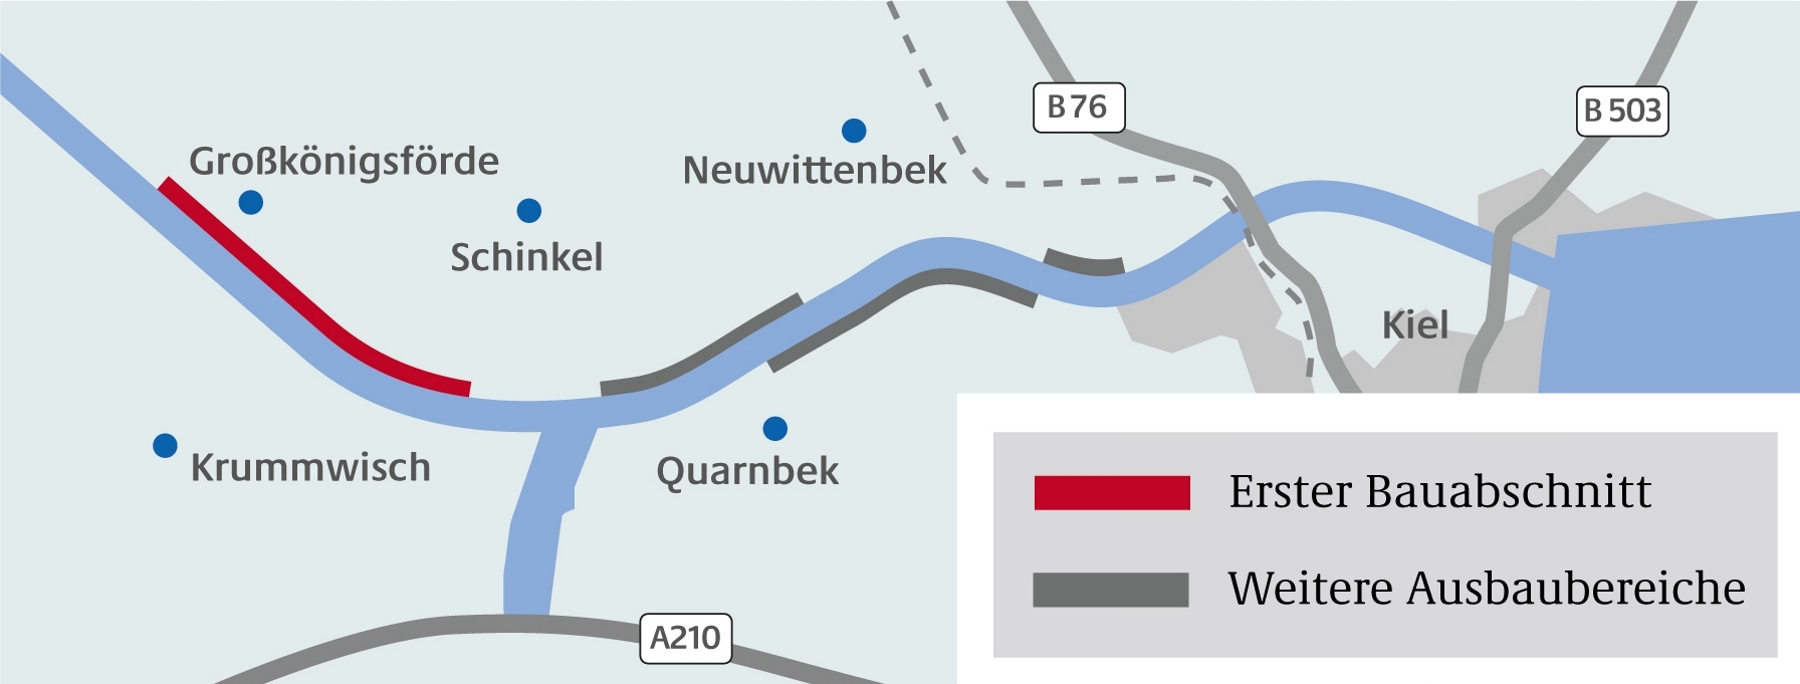 Das Bild zeigt die schematische Darstellung des Ausbaus der NOK-Oststrecke